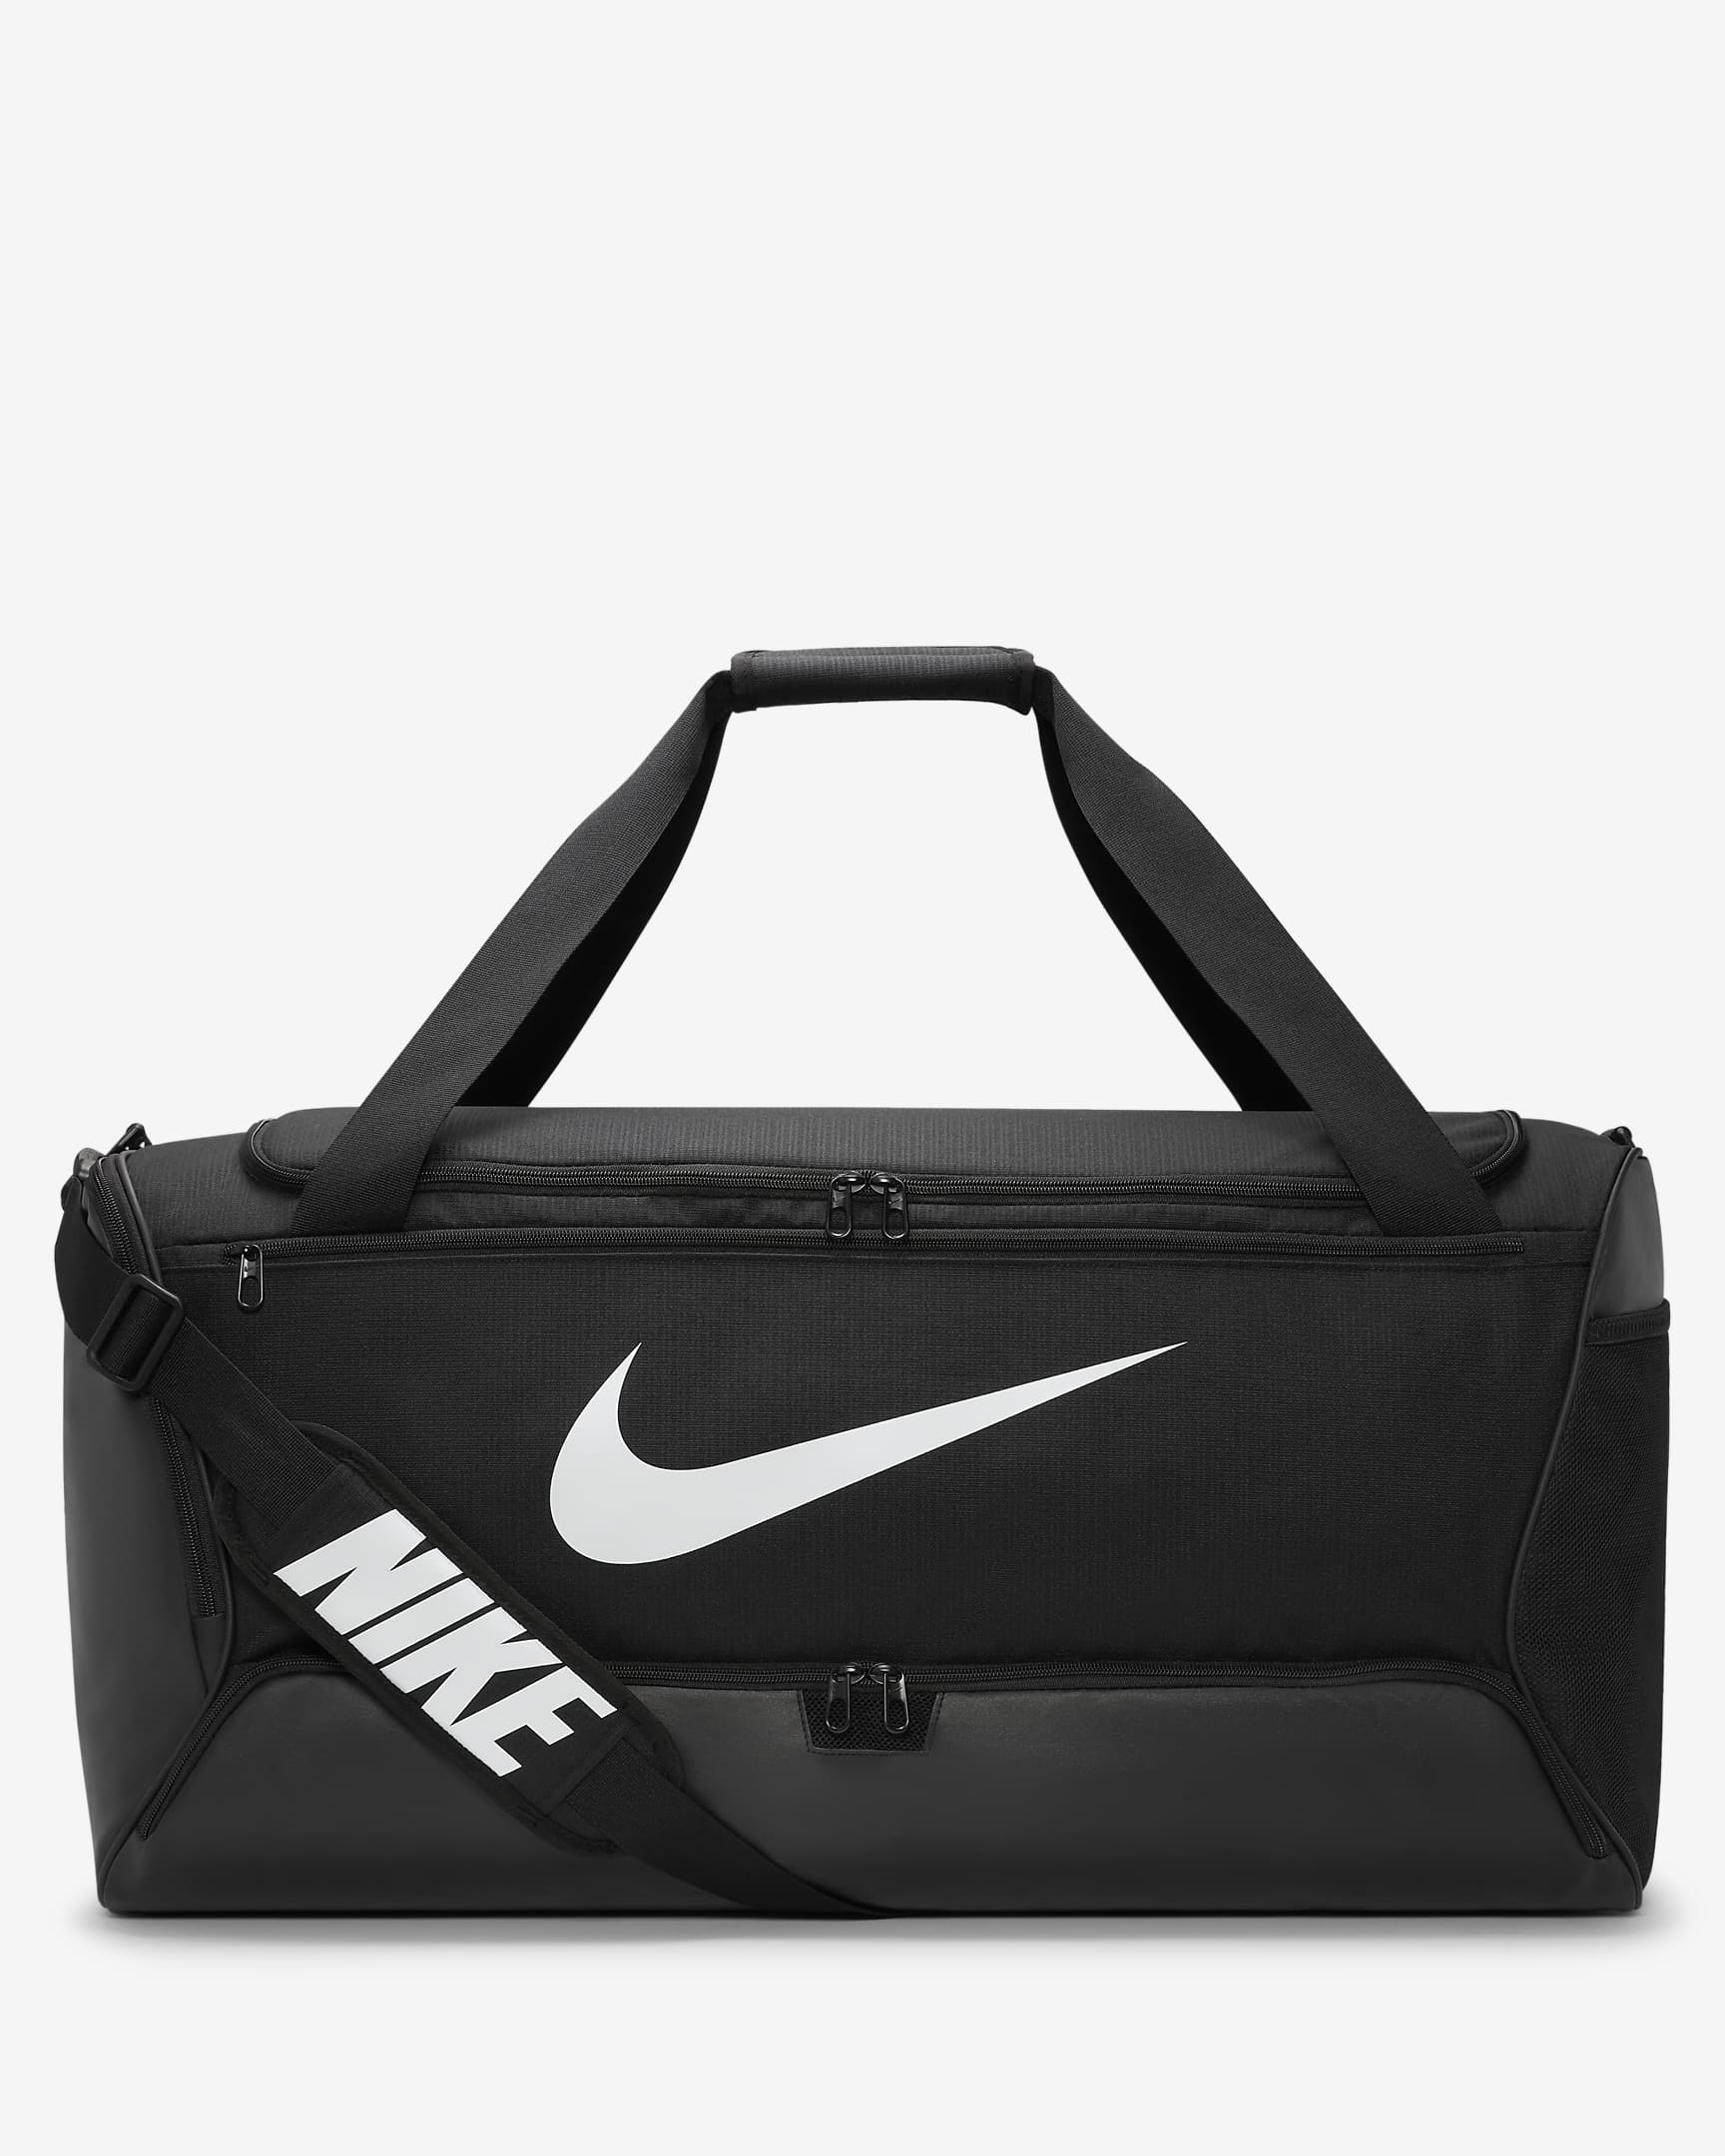 Nike Brasilia 9.5 Training Duffel Bag (Large, 95L) - Black/Black/White